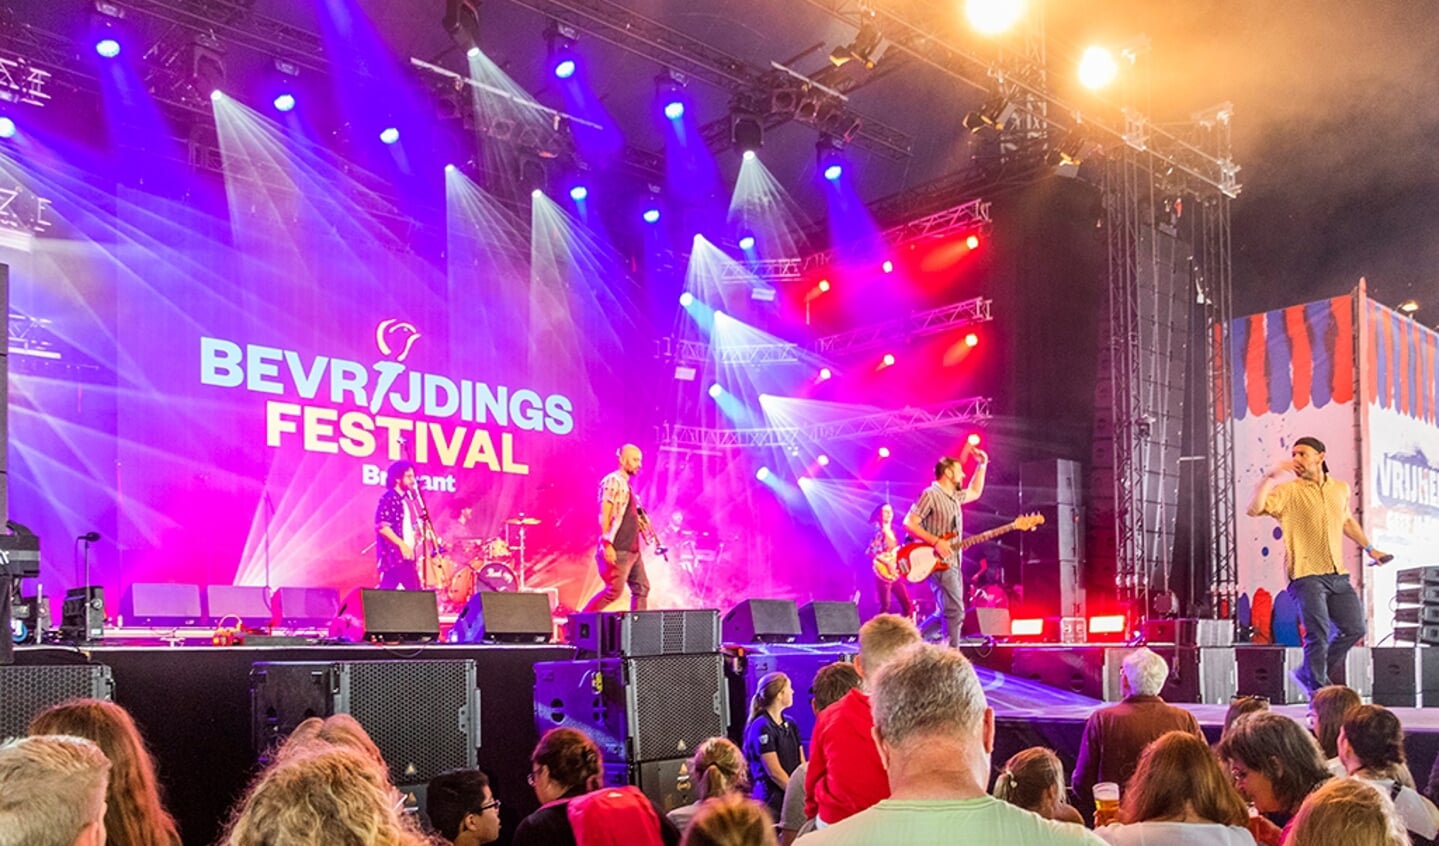 Bevrijdingsfestival Brabant vond dit jaar plaats op de Pettelaarse Schans in Den Bosch.